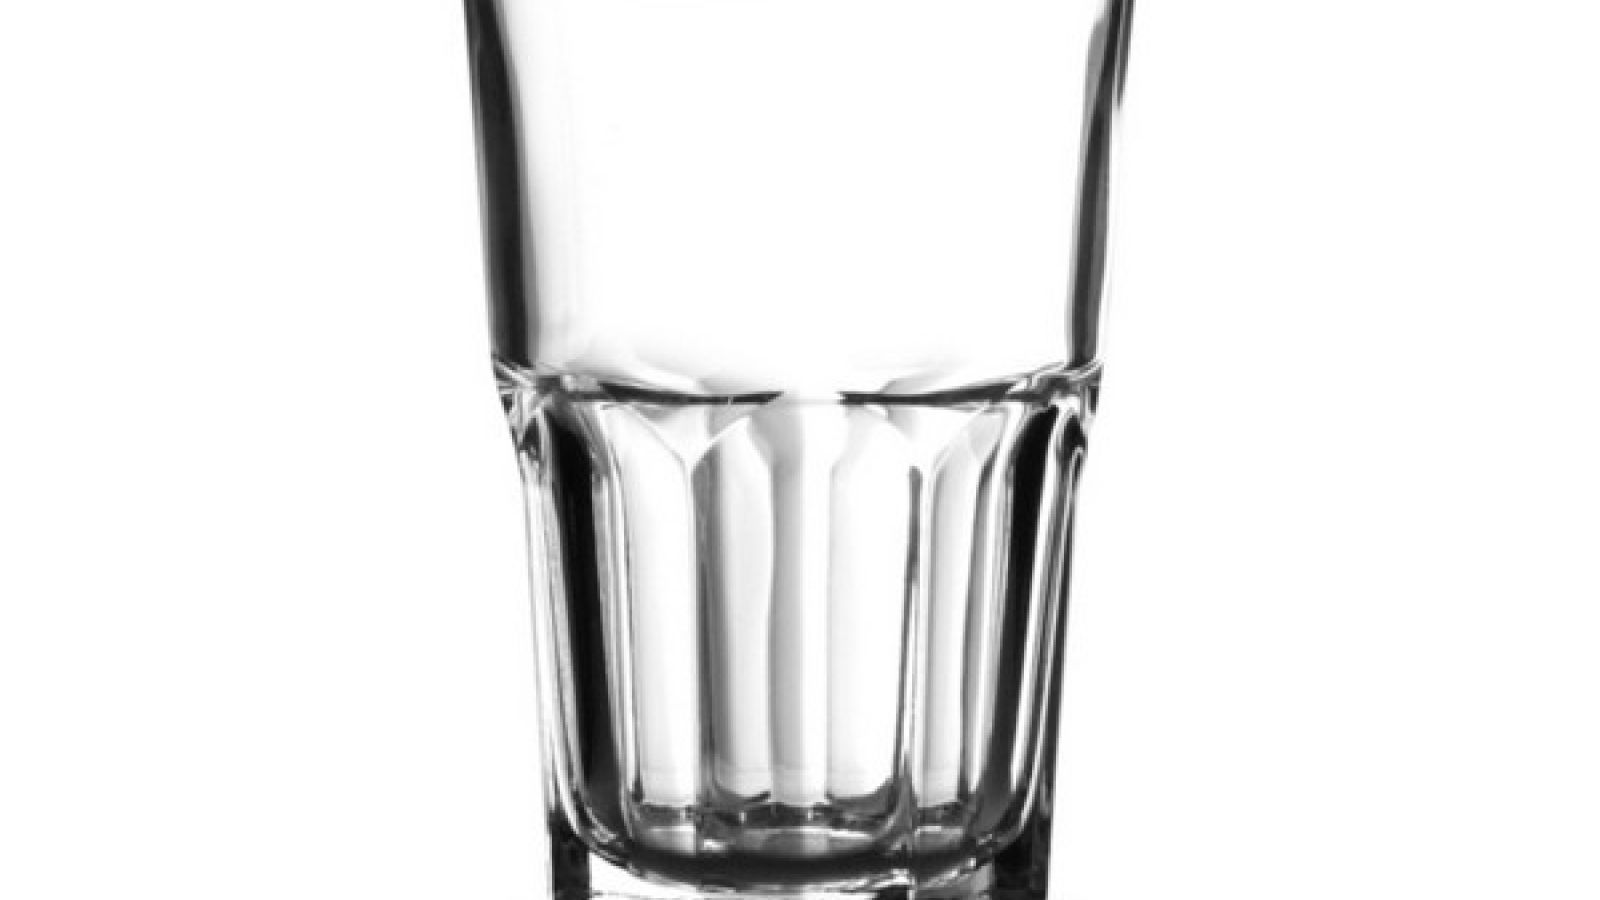 Bicchieri infrangibili plastica 40 cl, Bicchieri granity